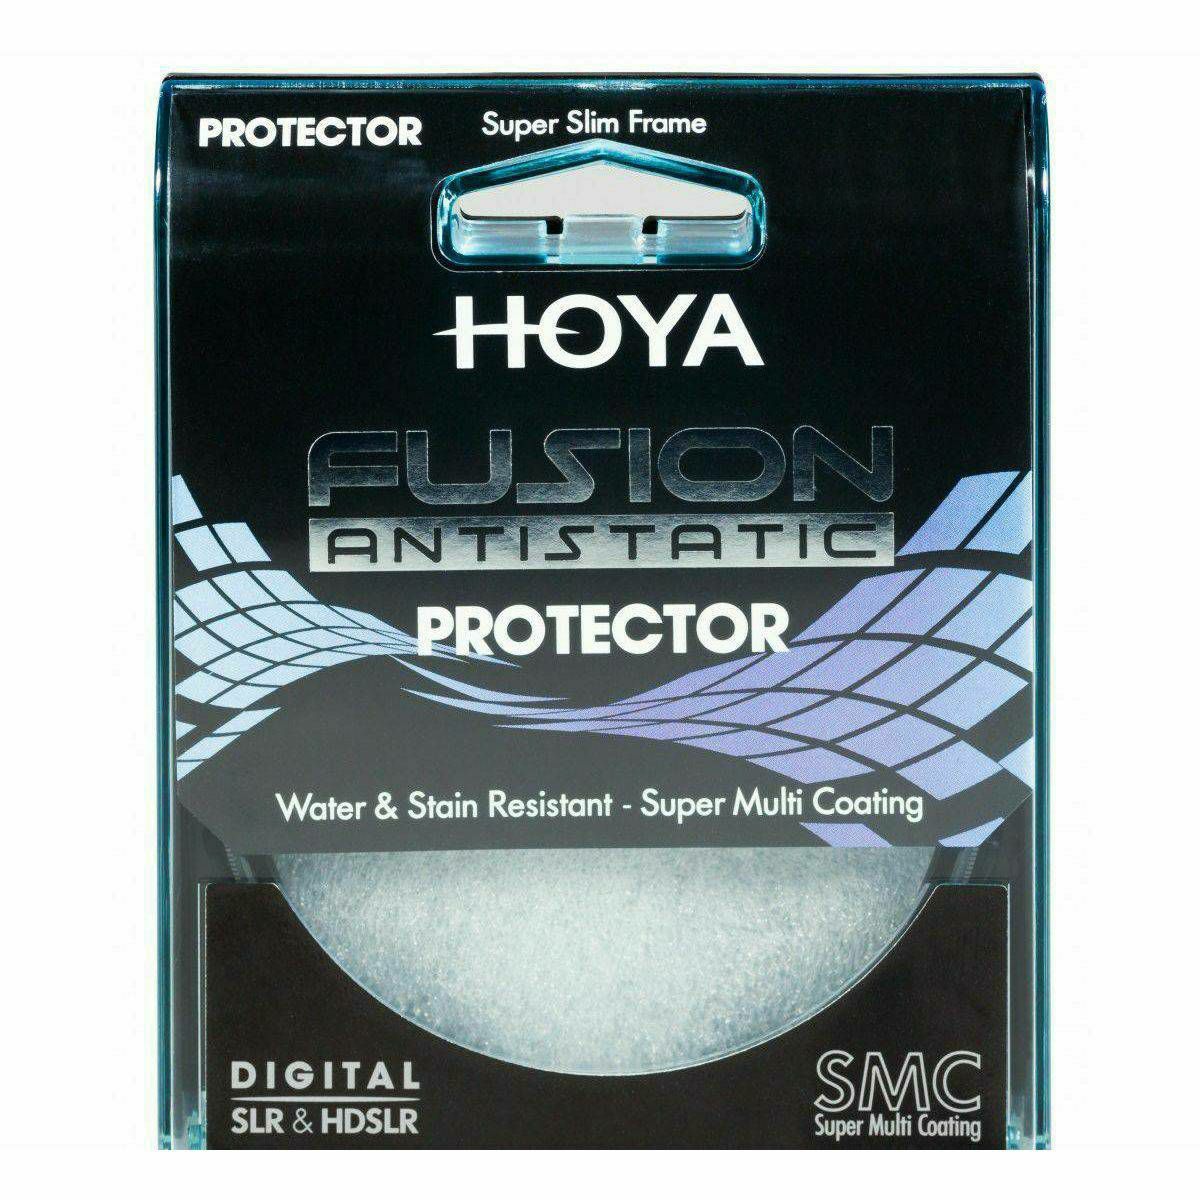 Hoya Fusion Antistatic CIR-PL CPL cirkularni polarizacijski filter 62mm